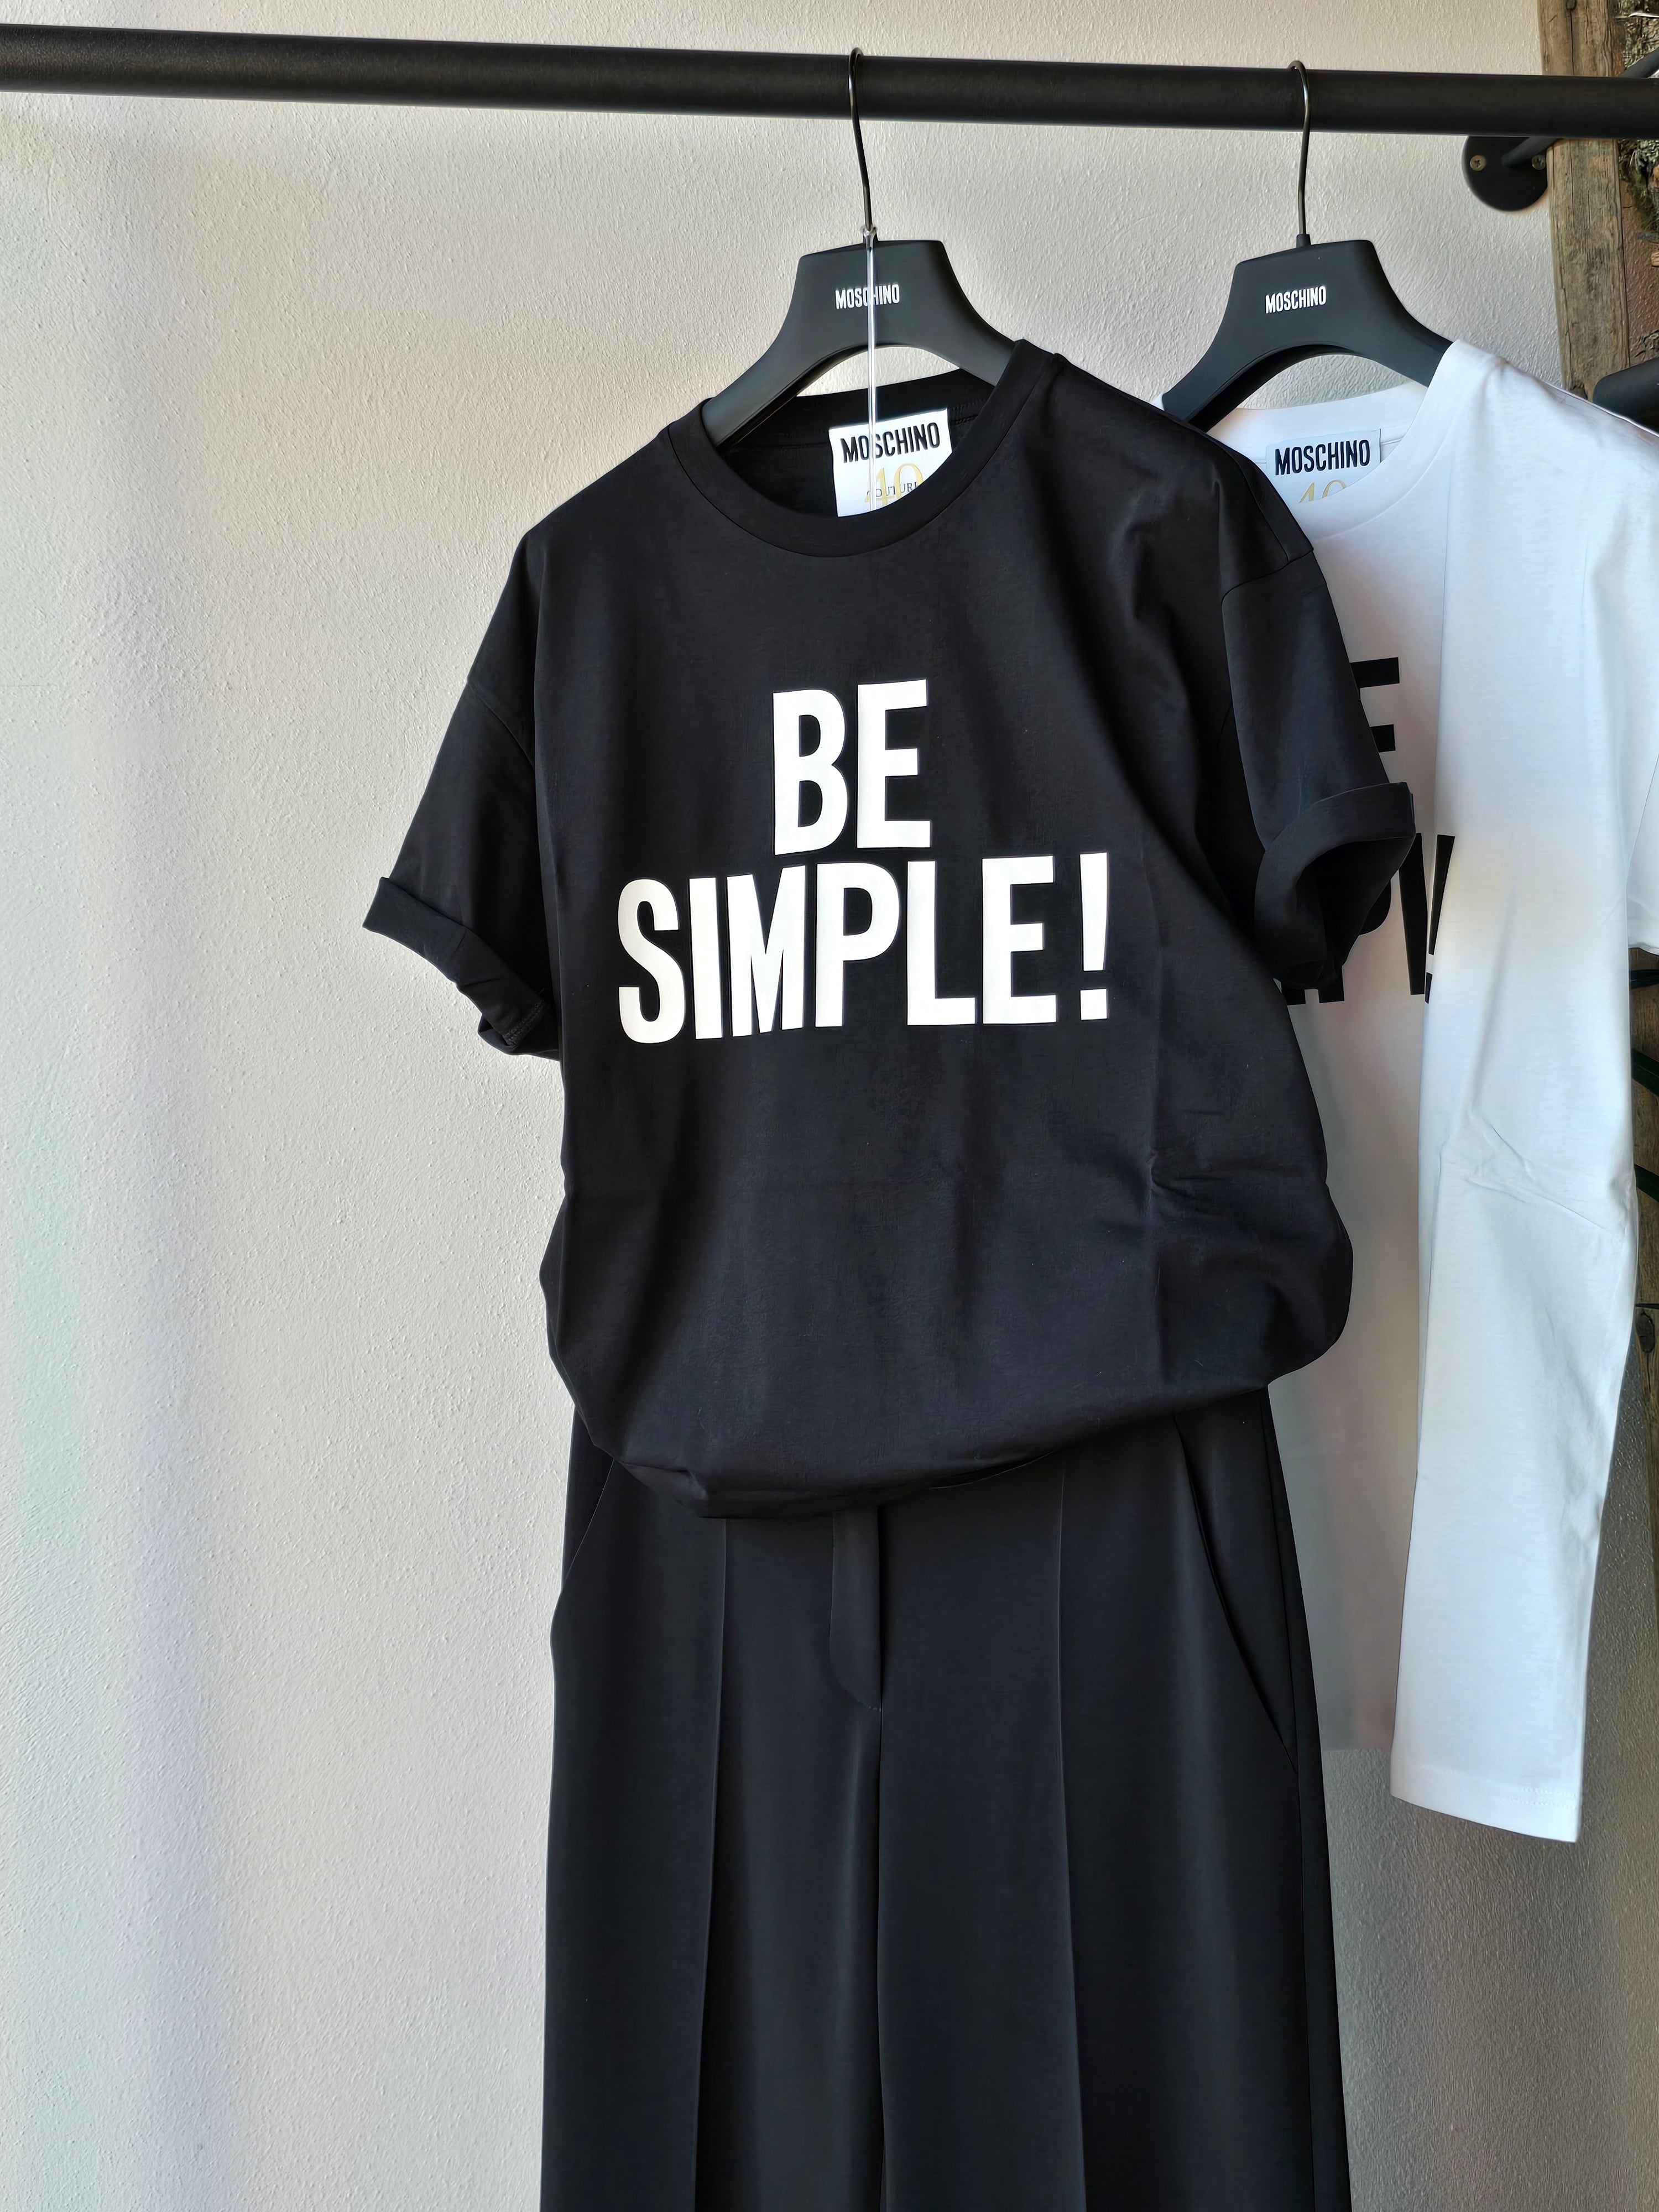 Moschino - T-shirt "Be Simple!" Nera